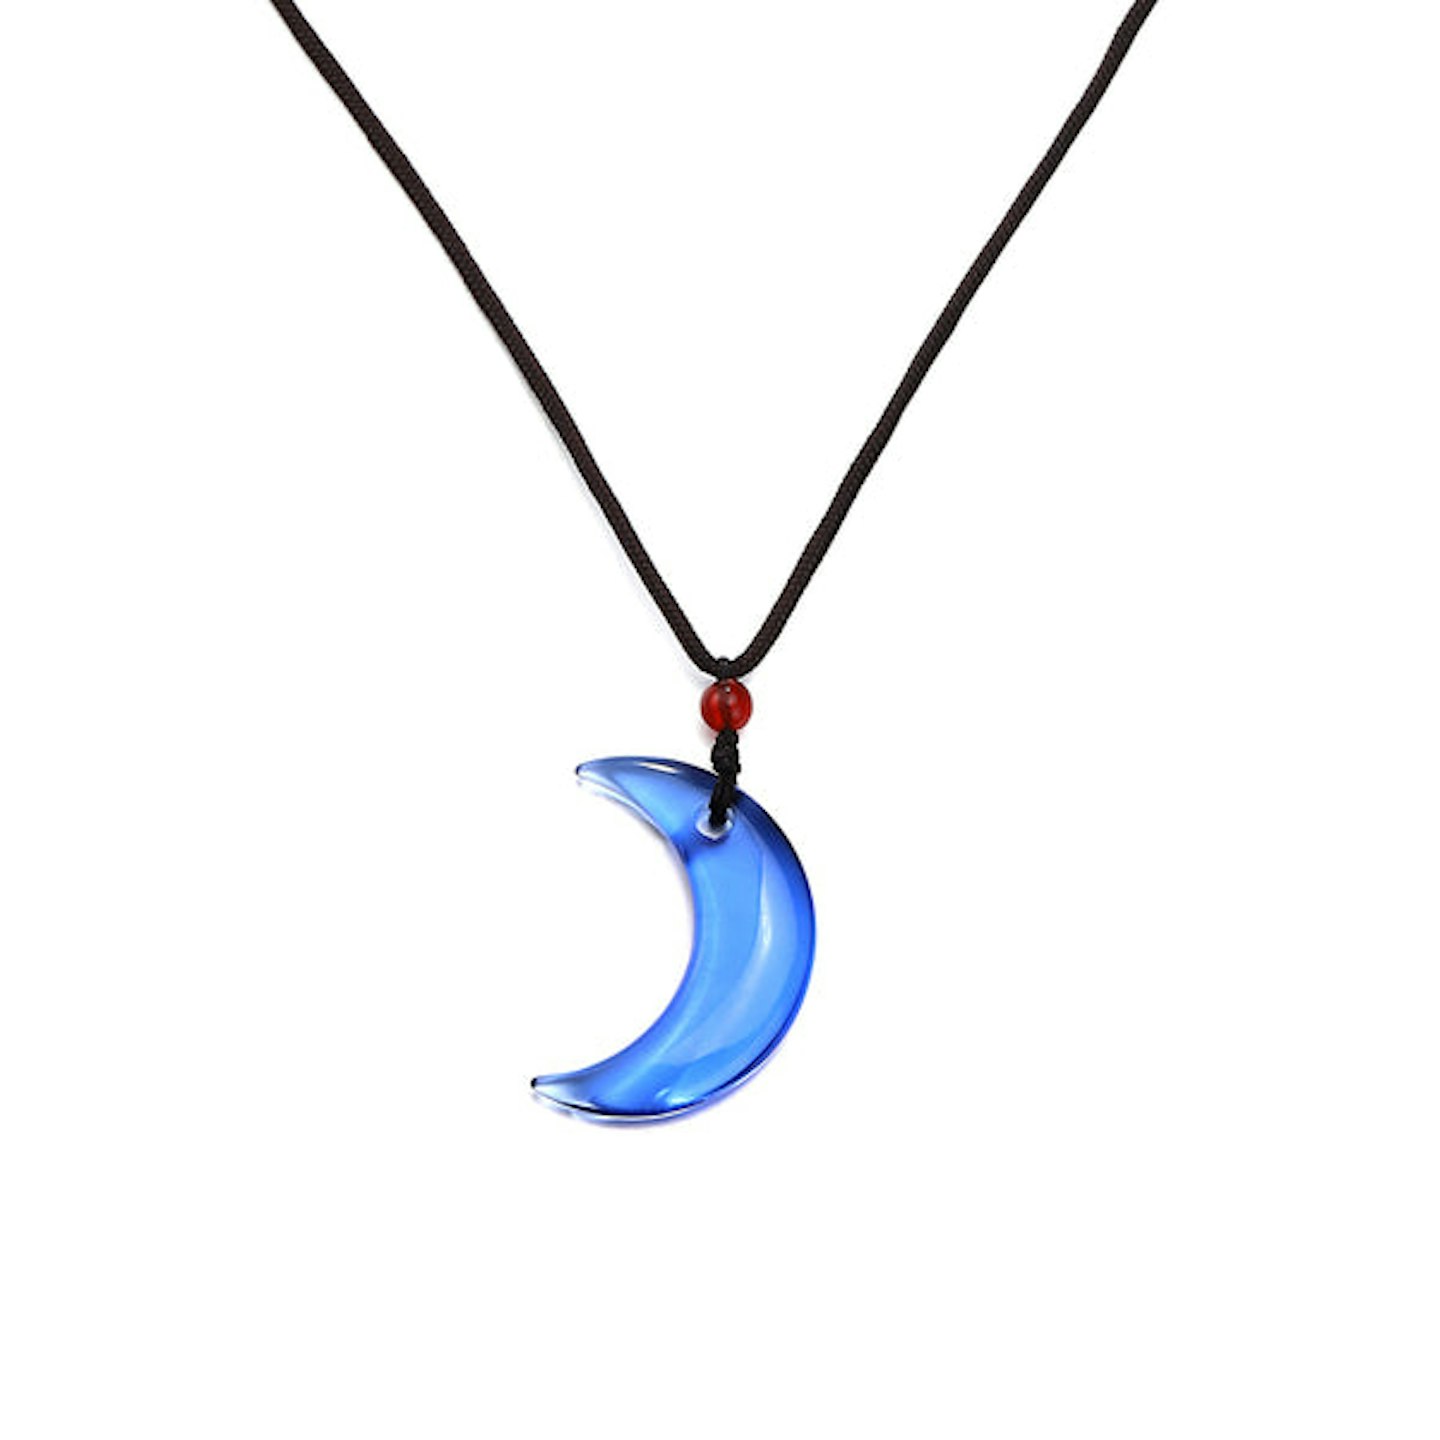 Orelia pendant necklace